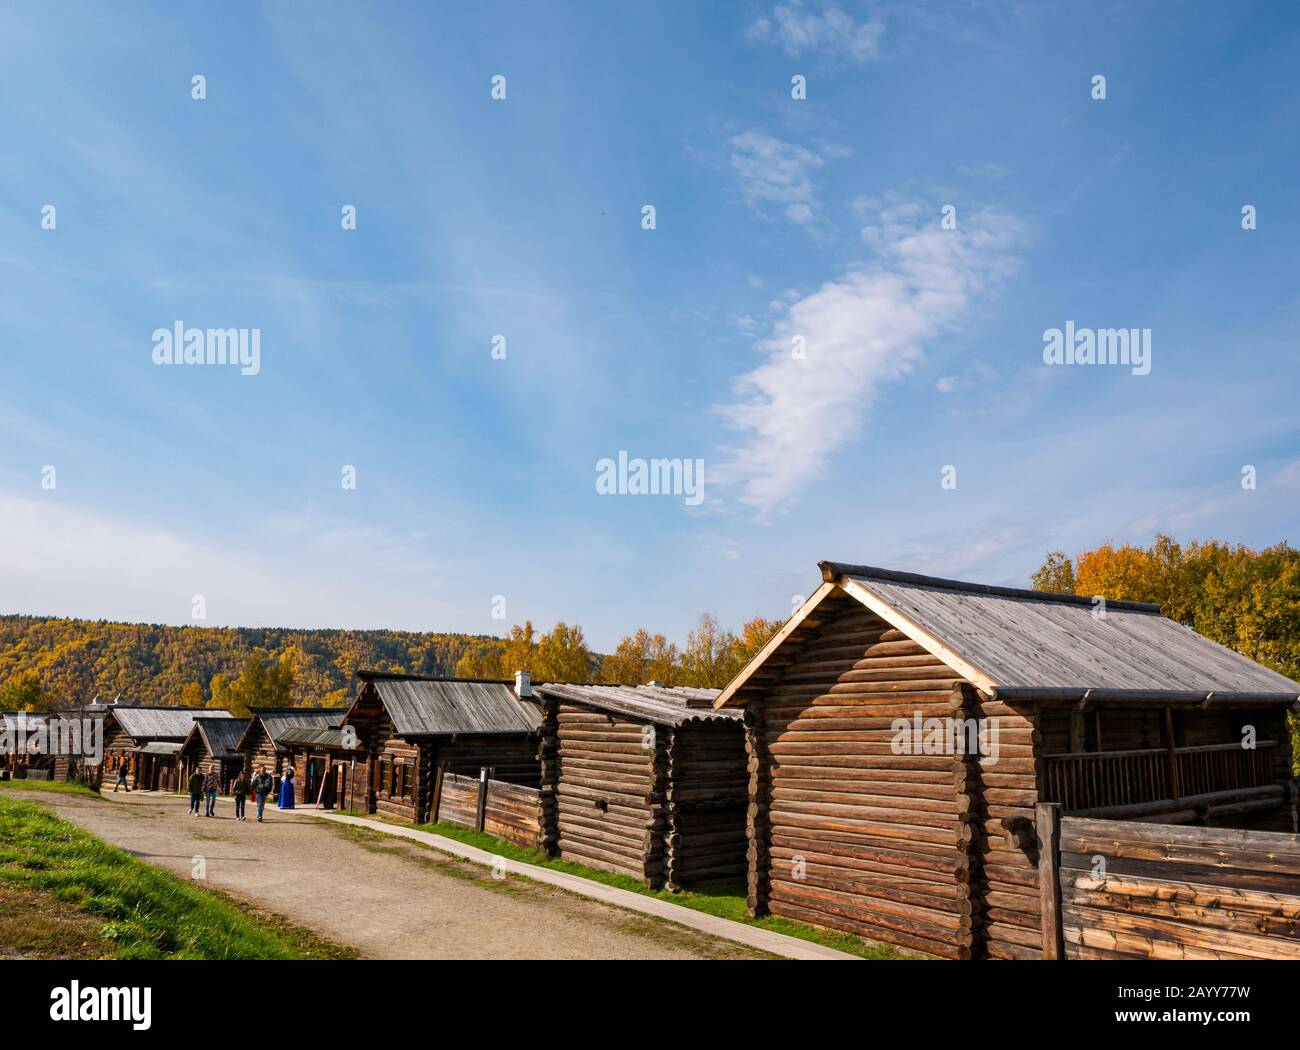 Maisons ou chalets en bois de style traditionnel à l'ancienne, Taltsy Museum of Wooden Architecture, région d'Irkoutsk, Sibérie, Russie Banque D'Images